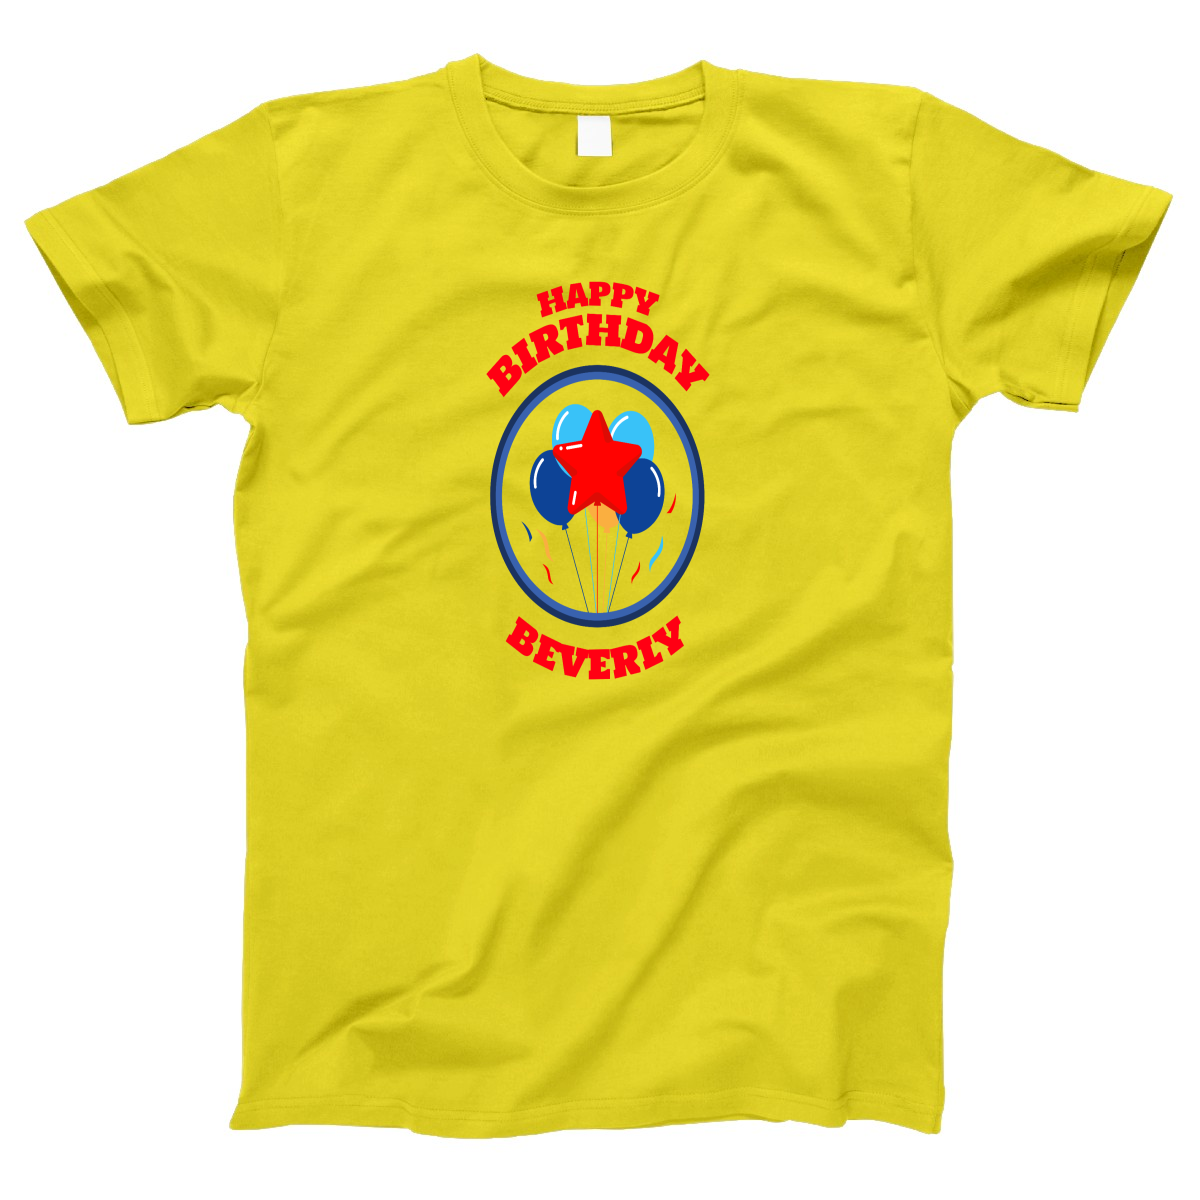 Happy Birthday Beverly Women's T-shirt | Yellow